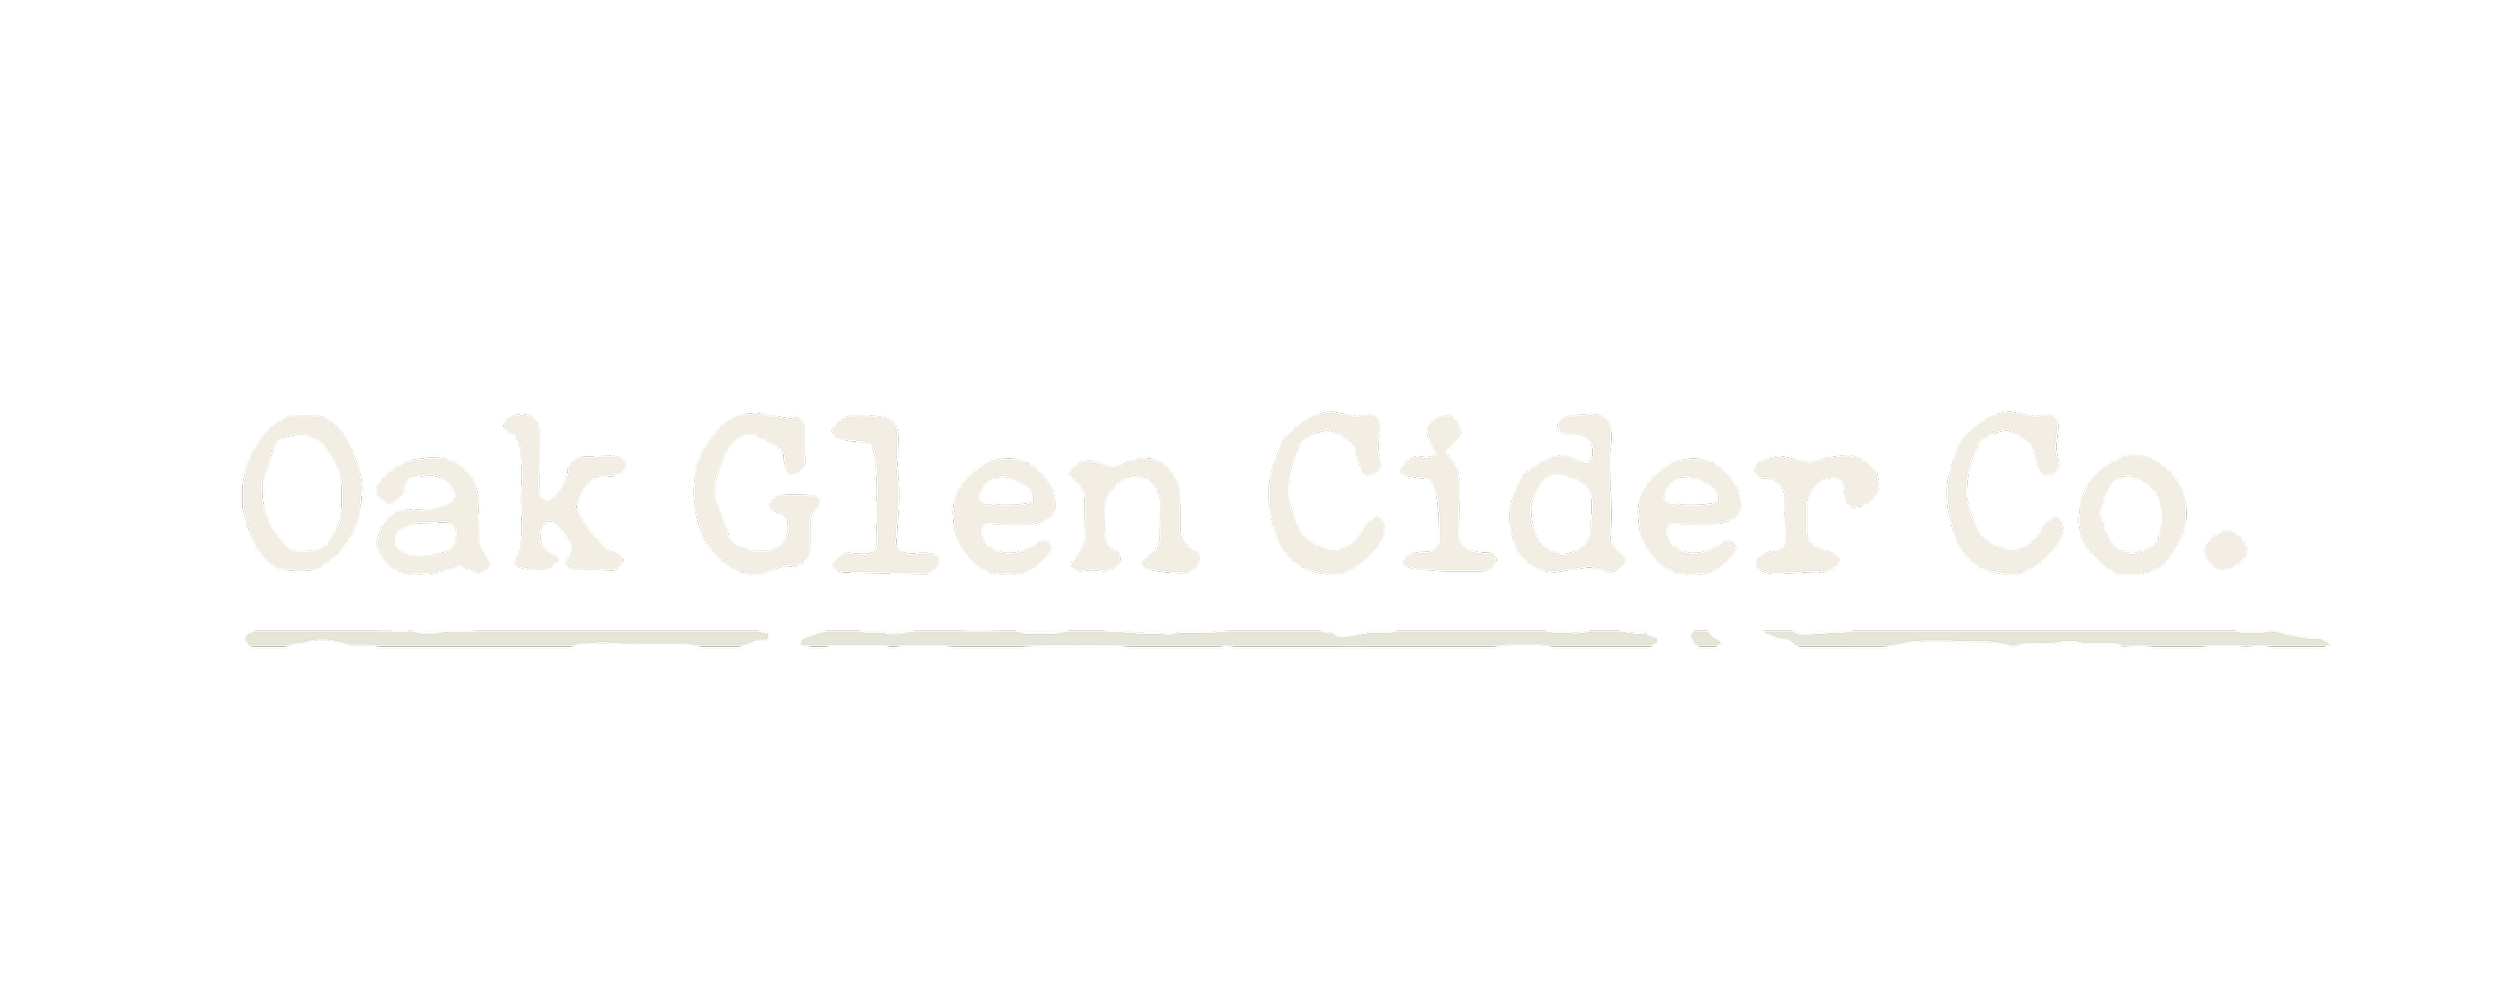 Oak Glen Cider Co